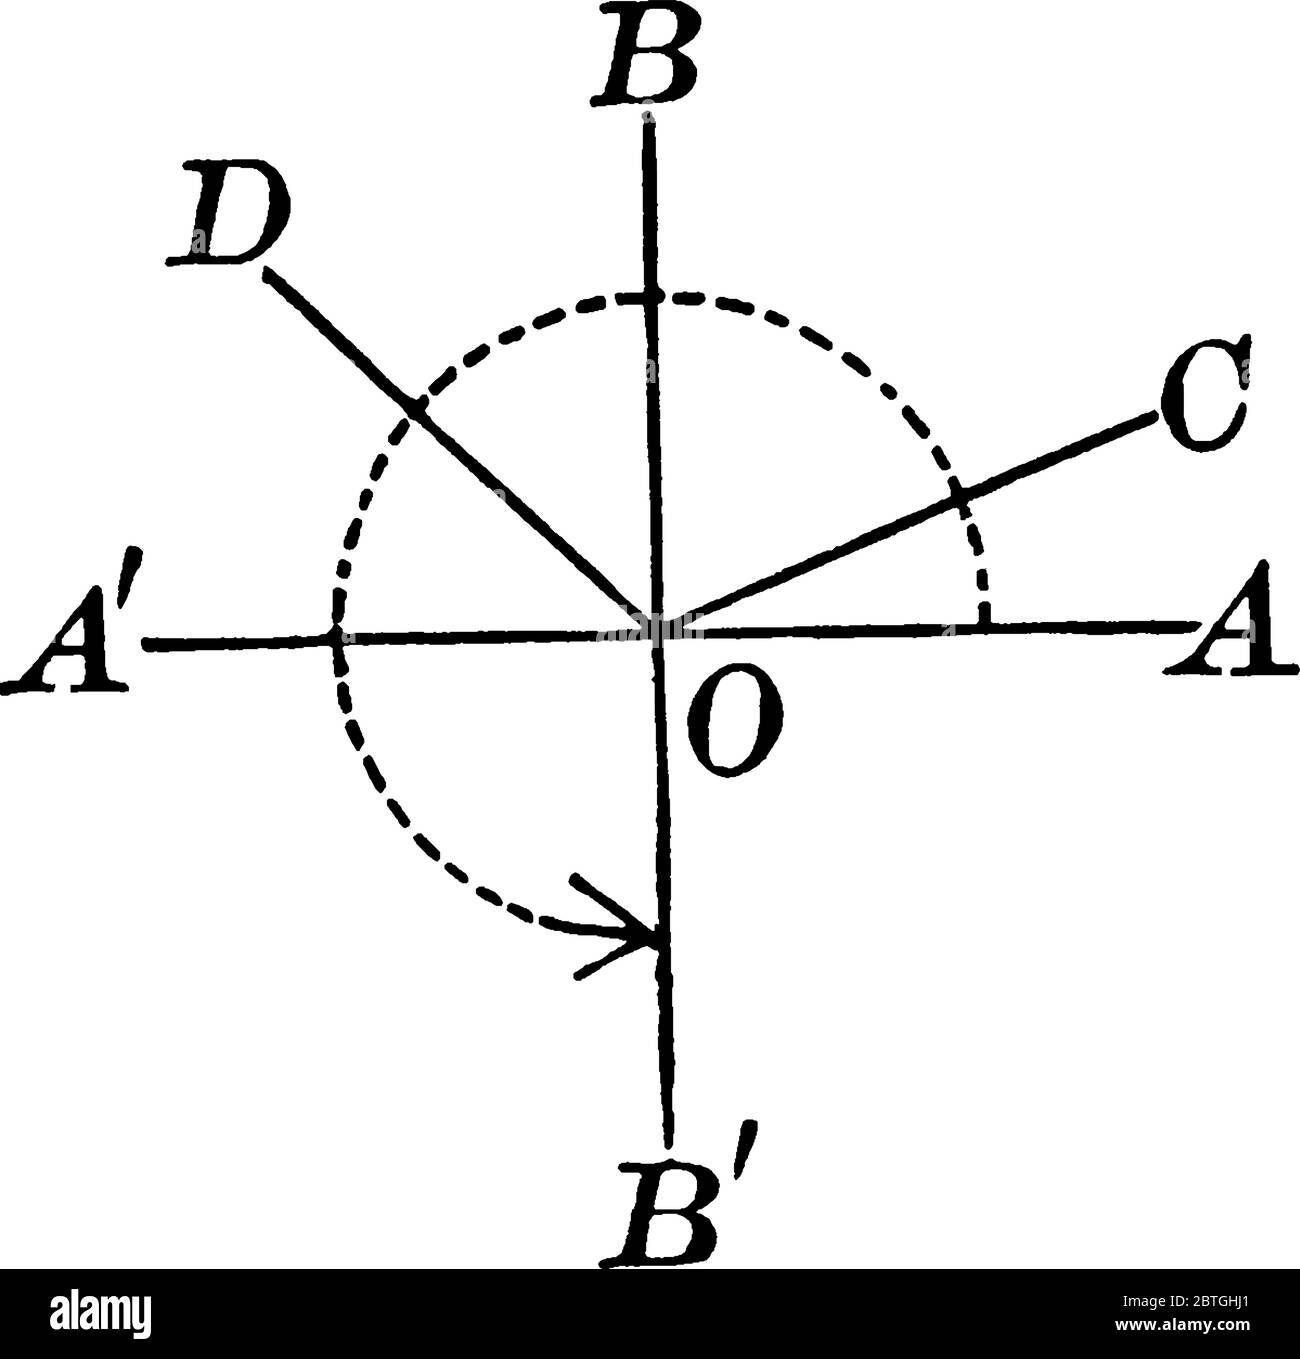 Tracé de deux rayons sur l'axe vertical B par rapport à l'axe HORIZONTAL A provenant du même point final appelé origine., dessin de ligne vintage ou gravure illu Illustration de Vecteur